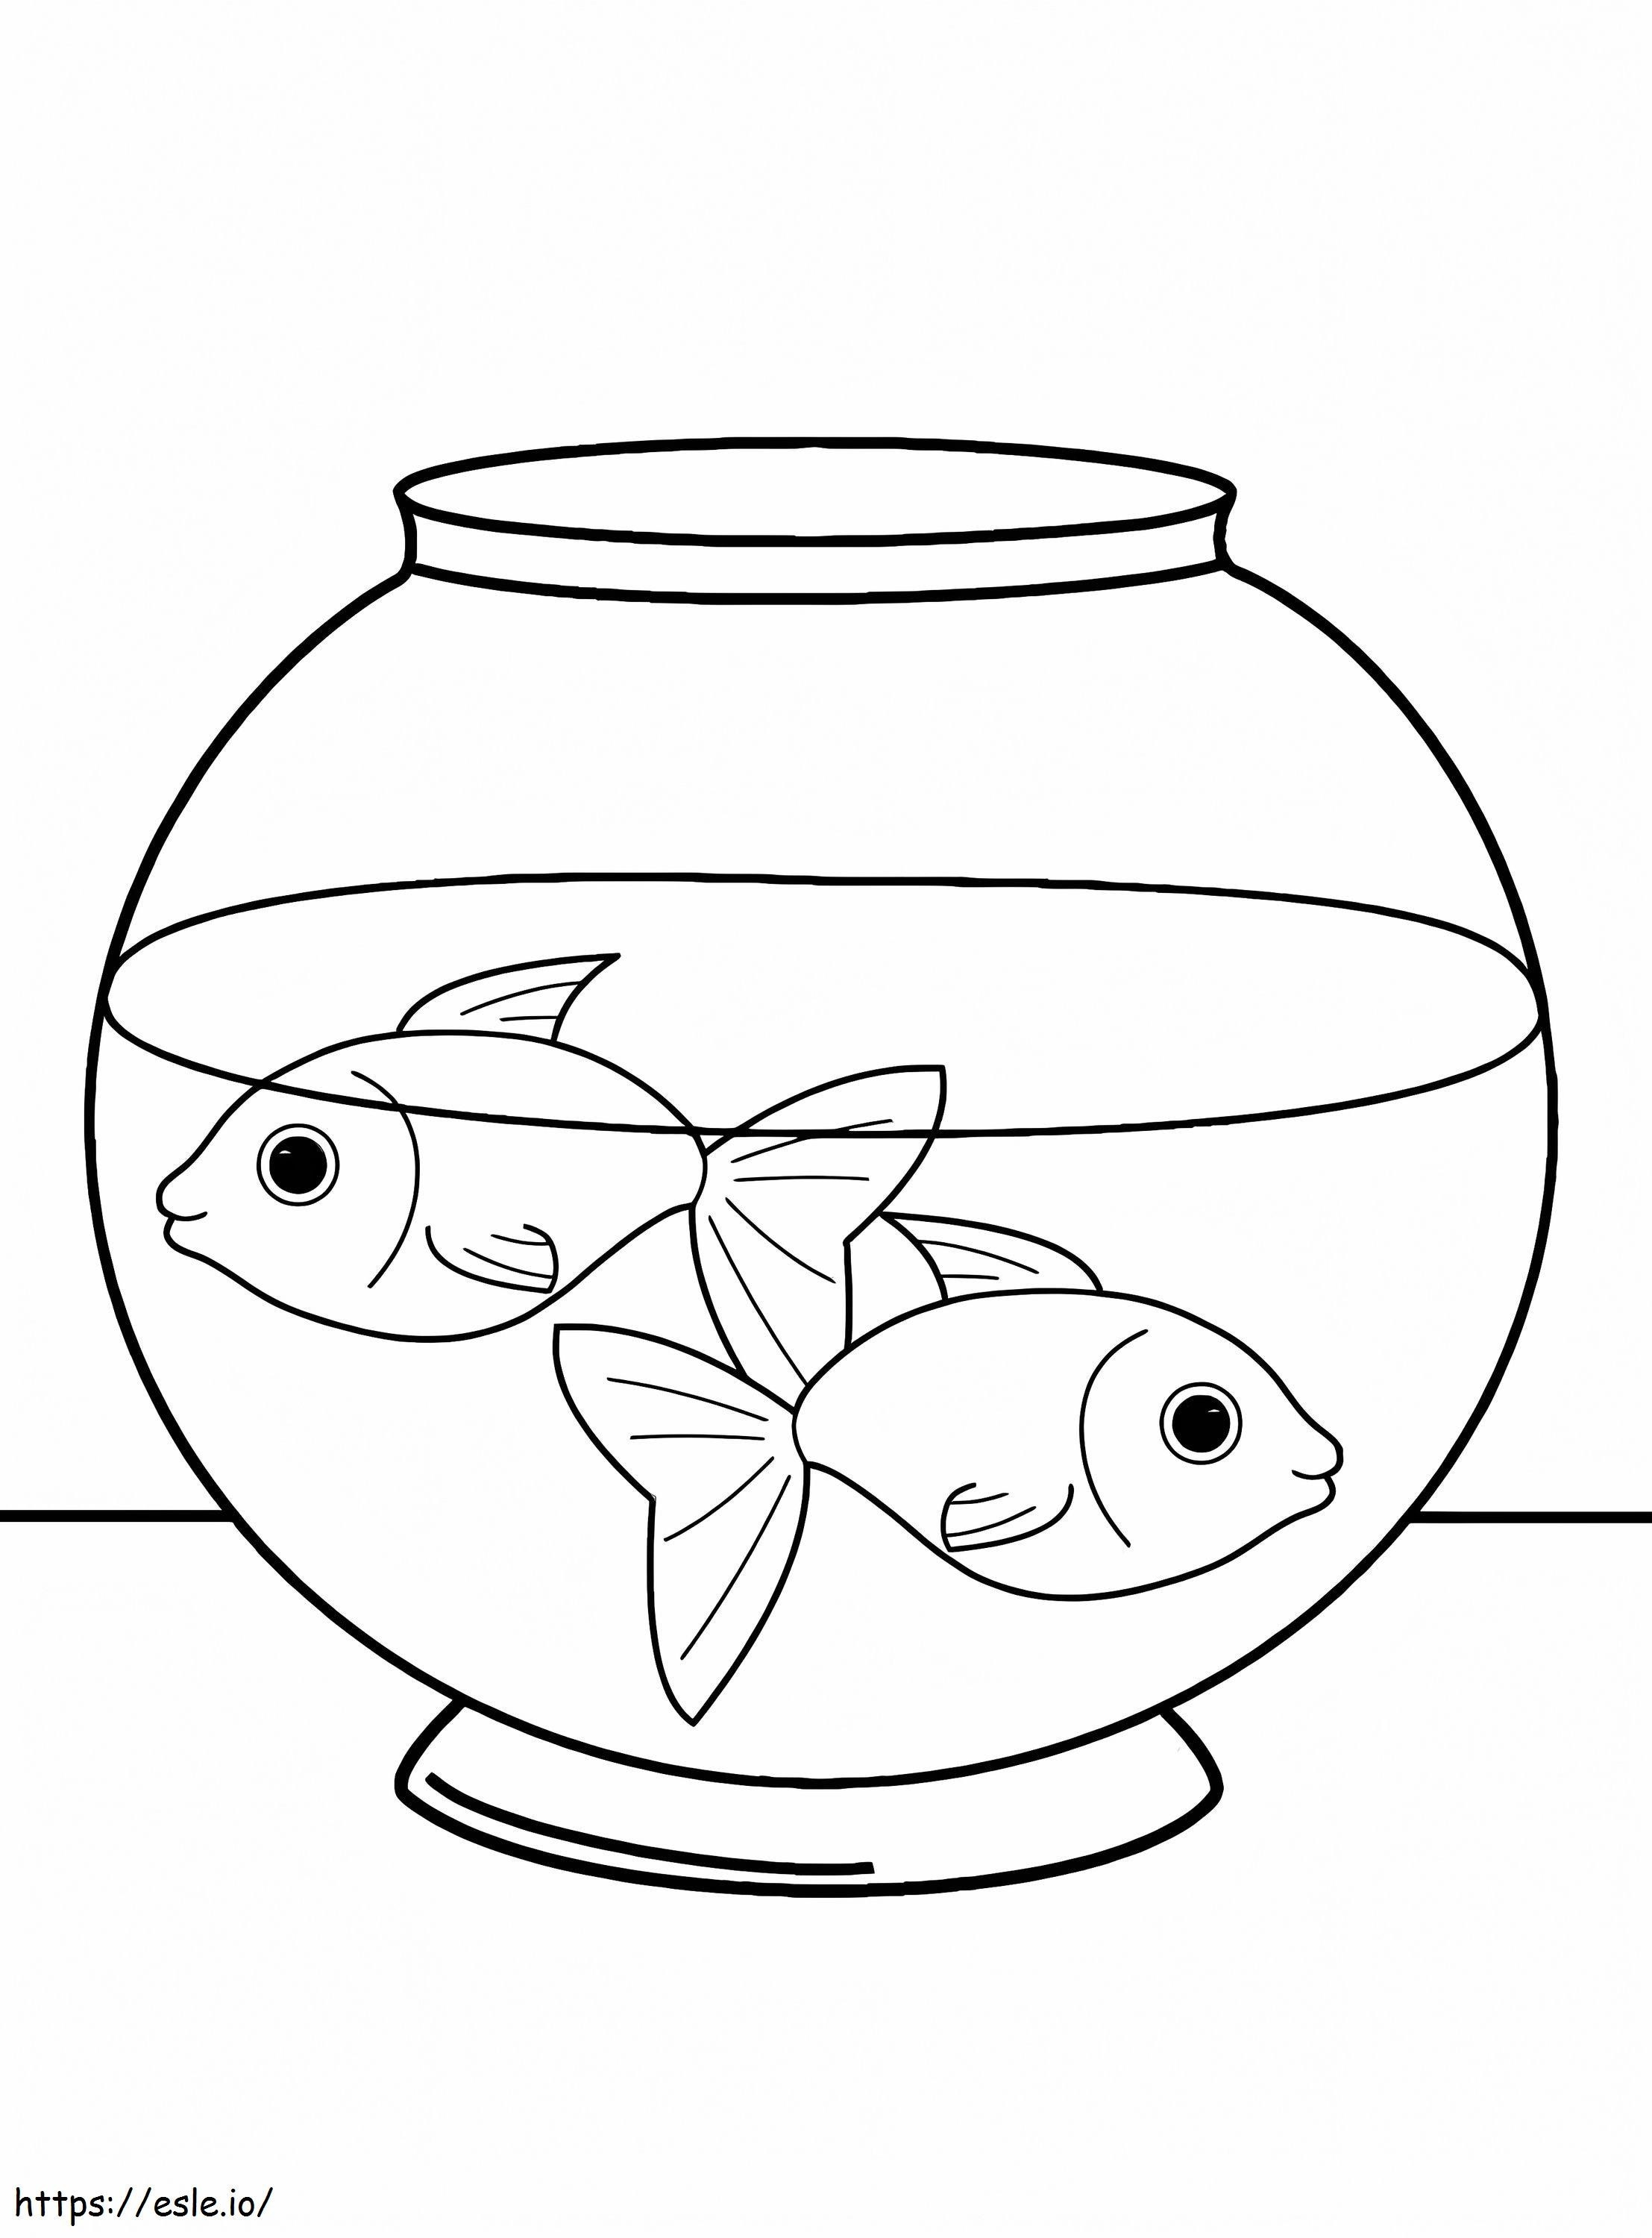 Coloración de peces mascota para colorear